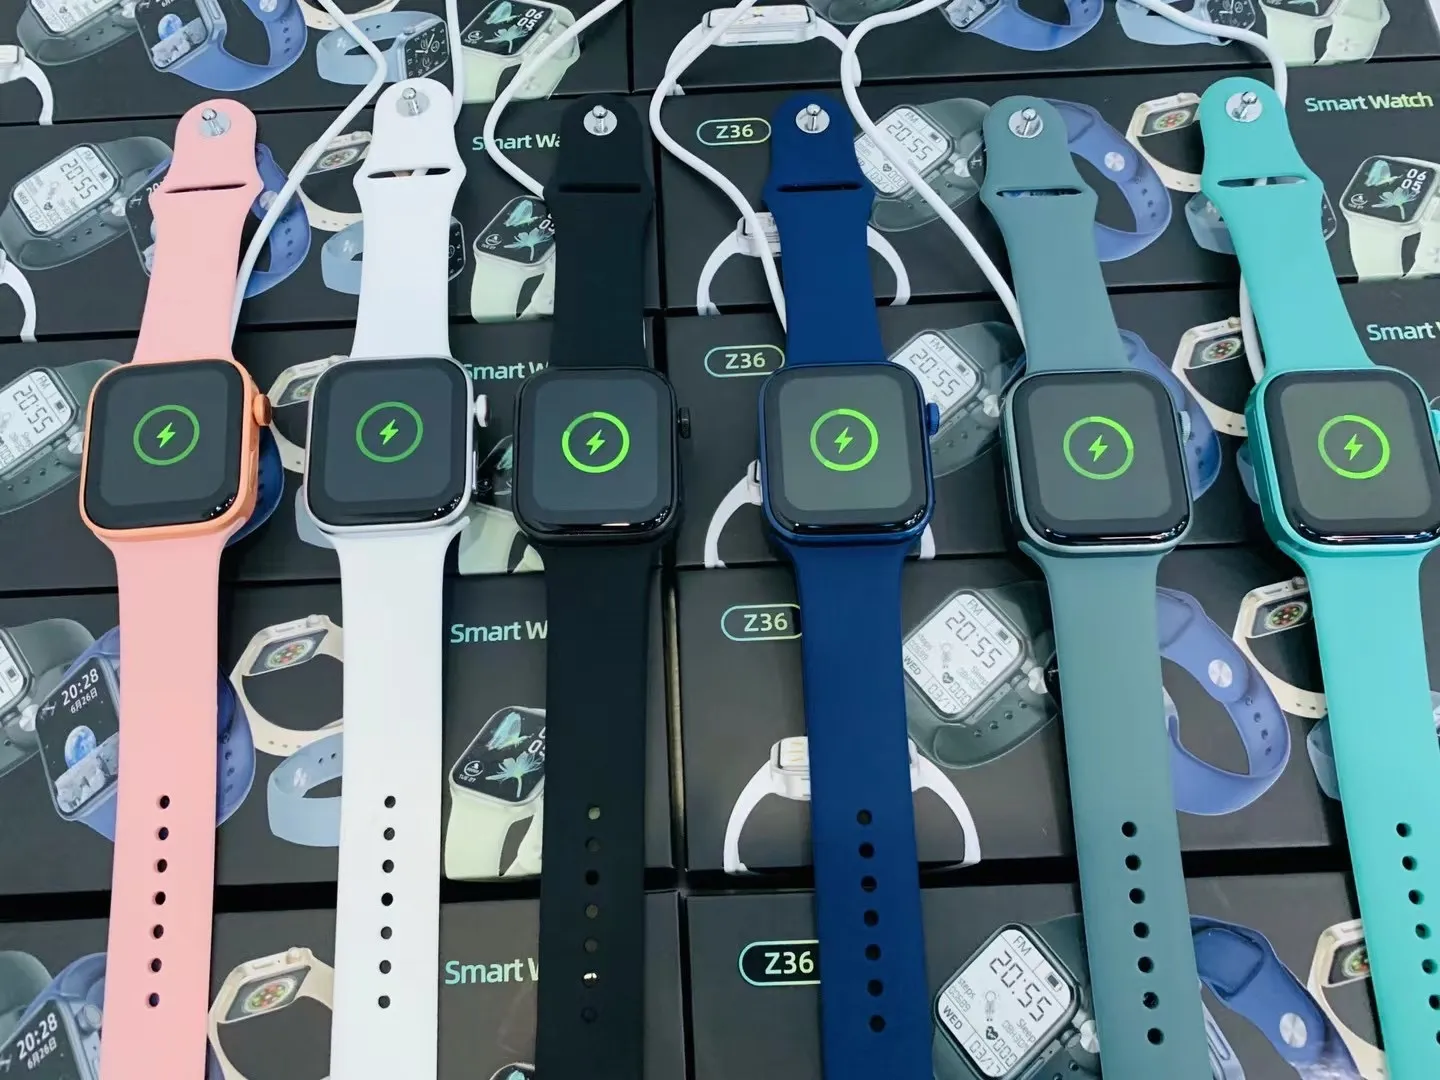 Il nuovo smartwatch con ricarica wireless, schermo rotondo full-touch da 1,3 pollici, notifica Bluetooth, monitoraggio della frequenza cardiaca, sede